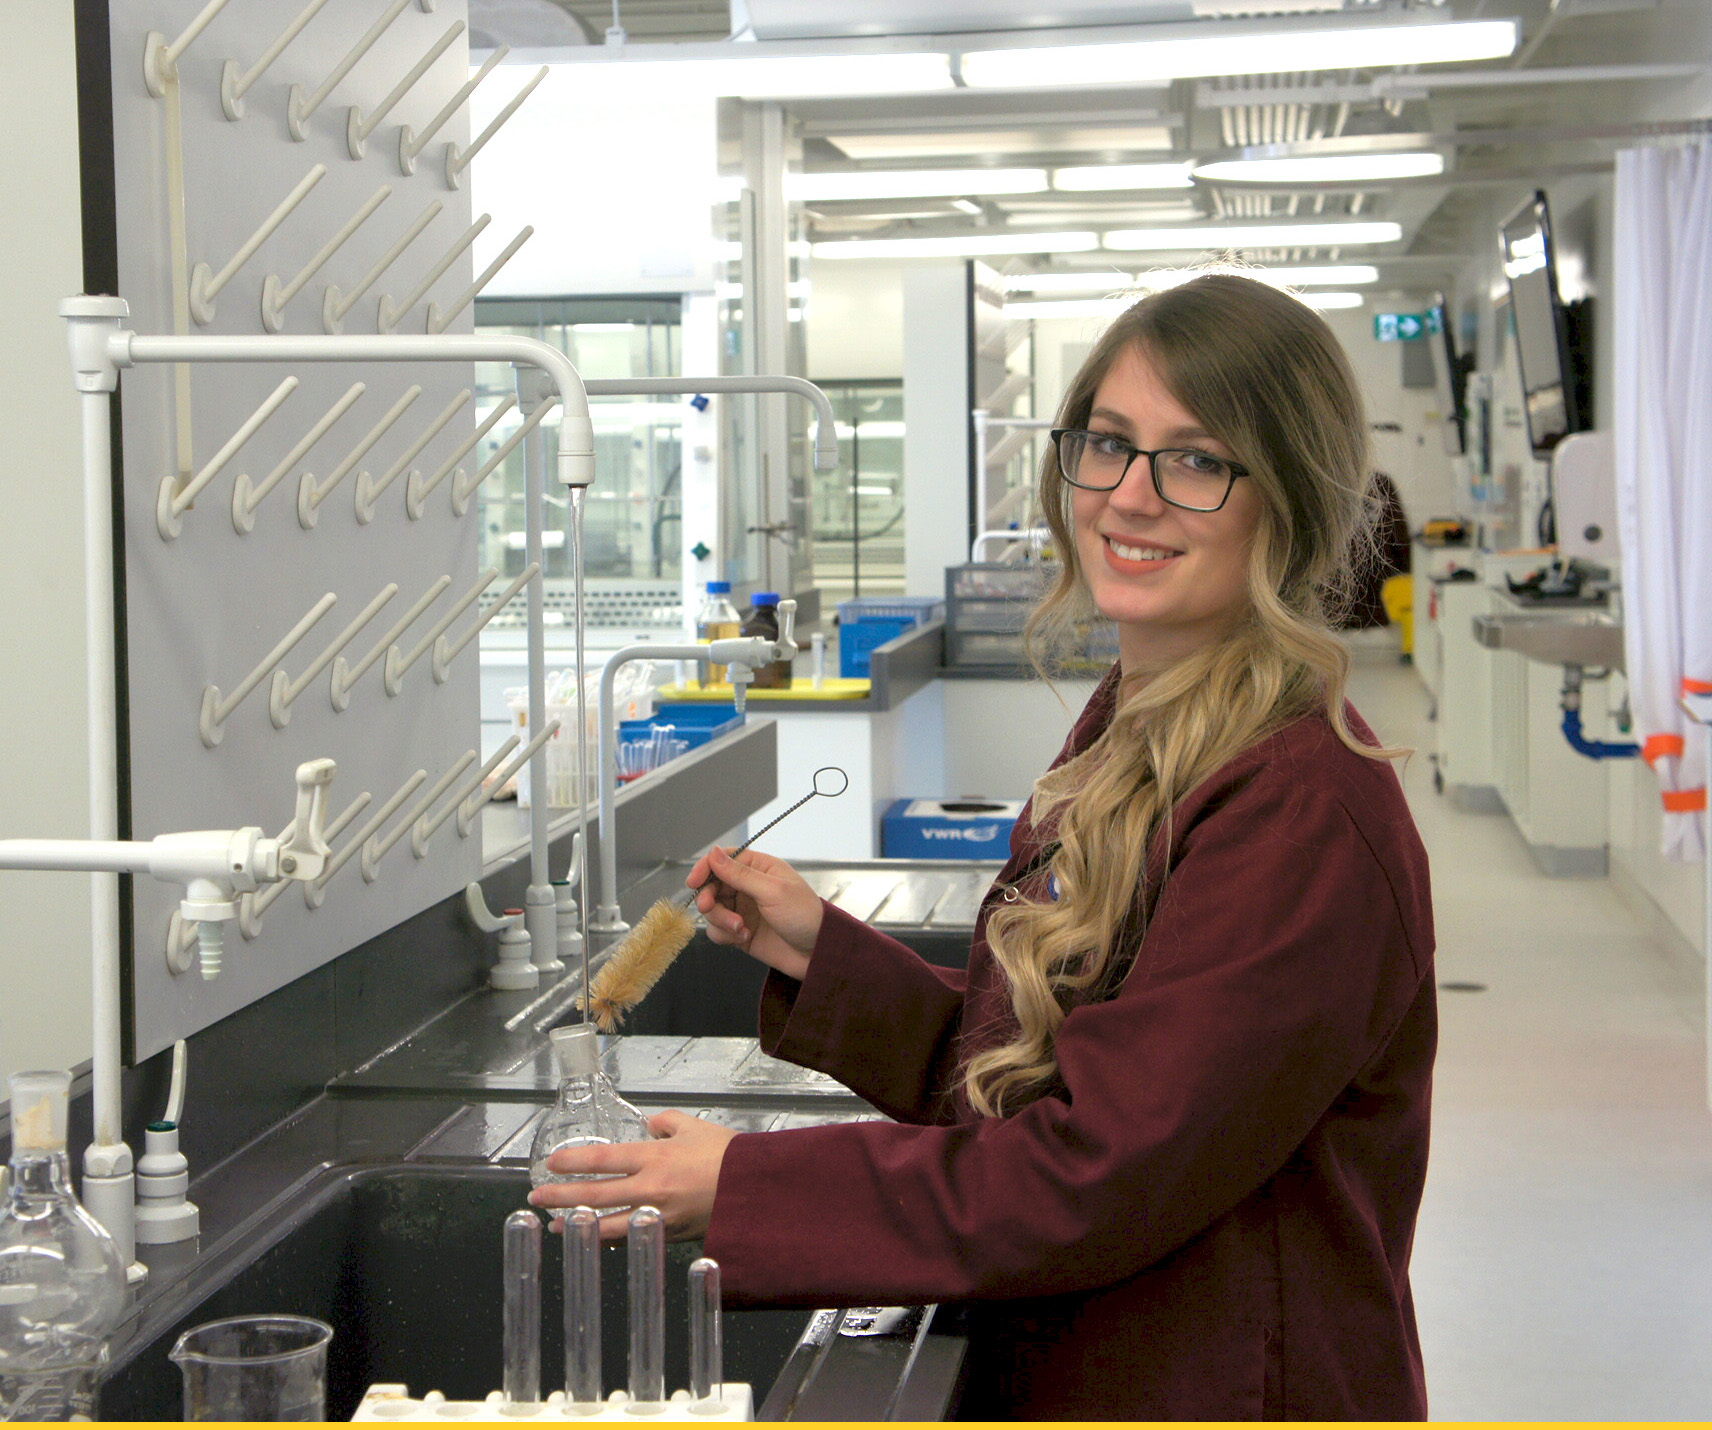  Une jeune étudiante lave un tube à essai en travaillant dans un laboratoire.